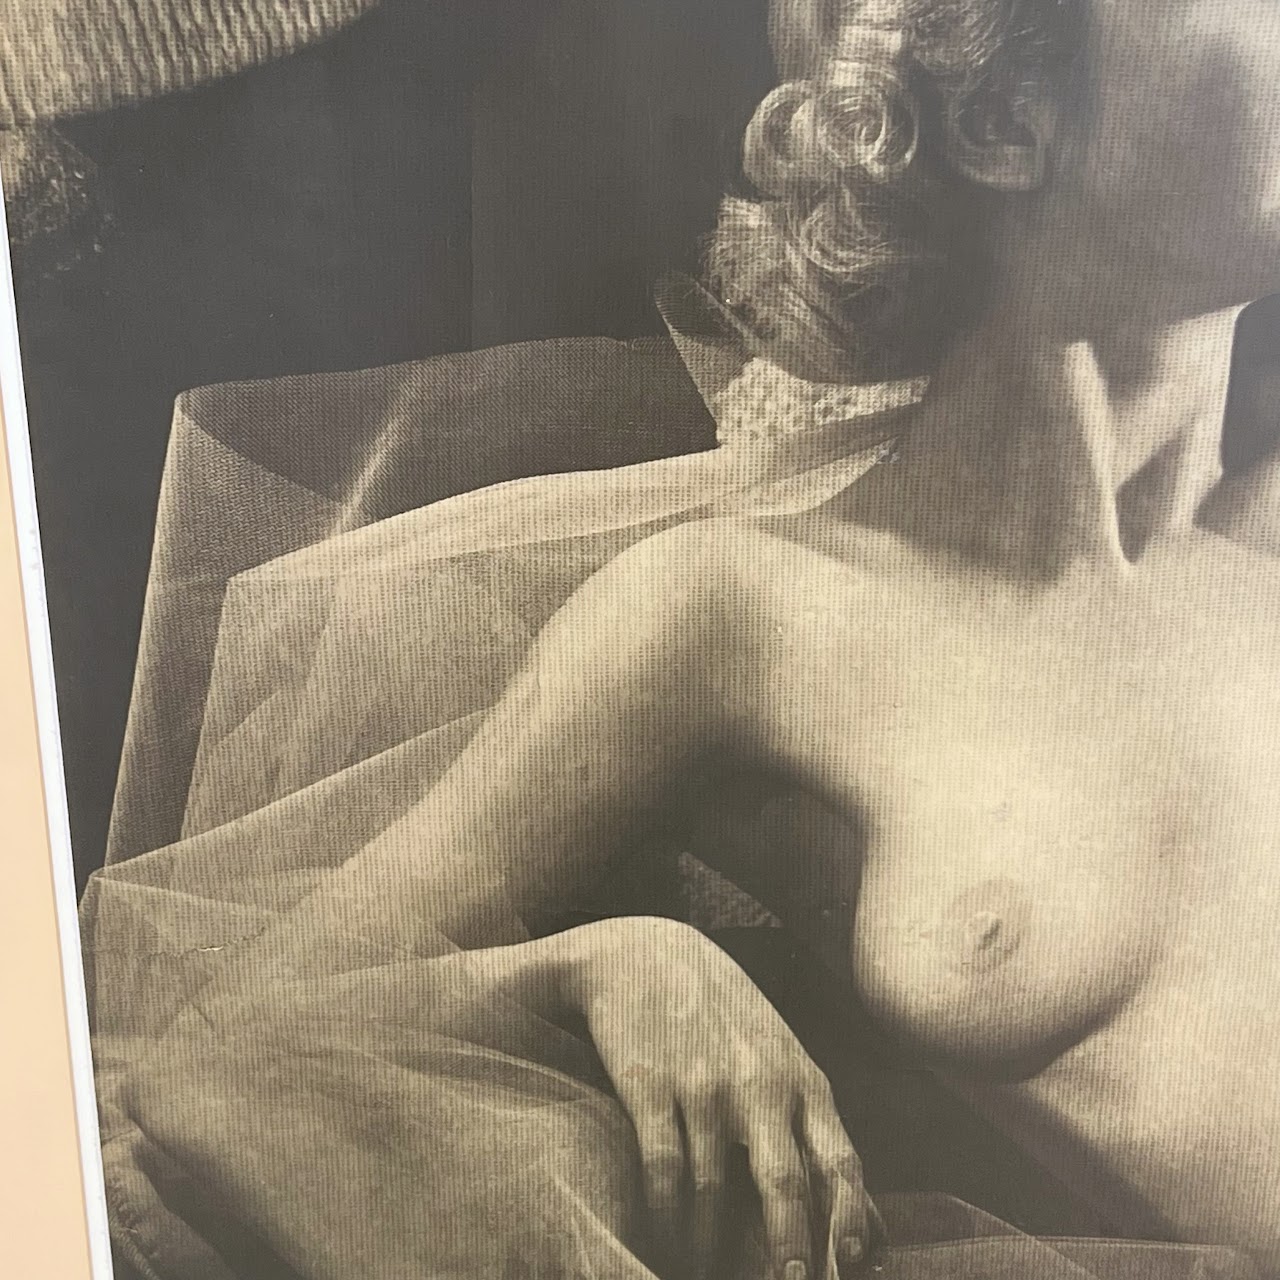 Nude Study Vintage Large Scale Offset Lithograph Portrait Photograph